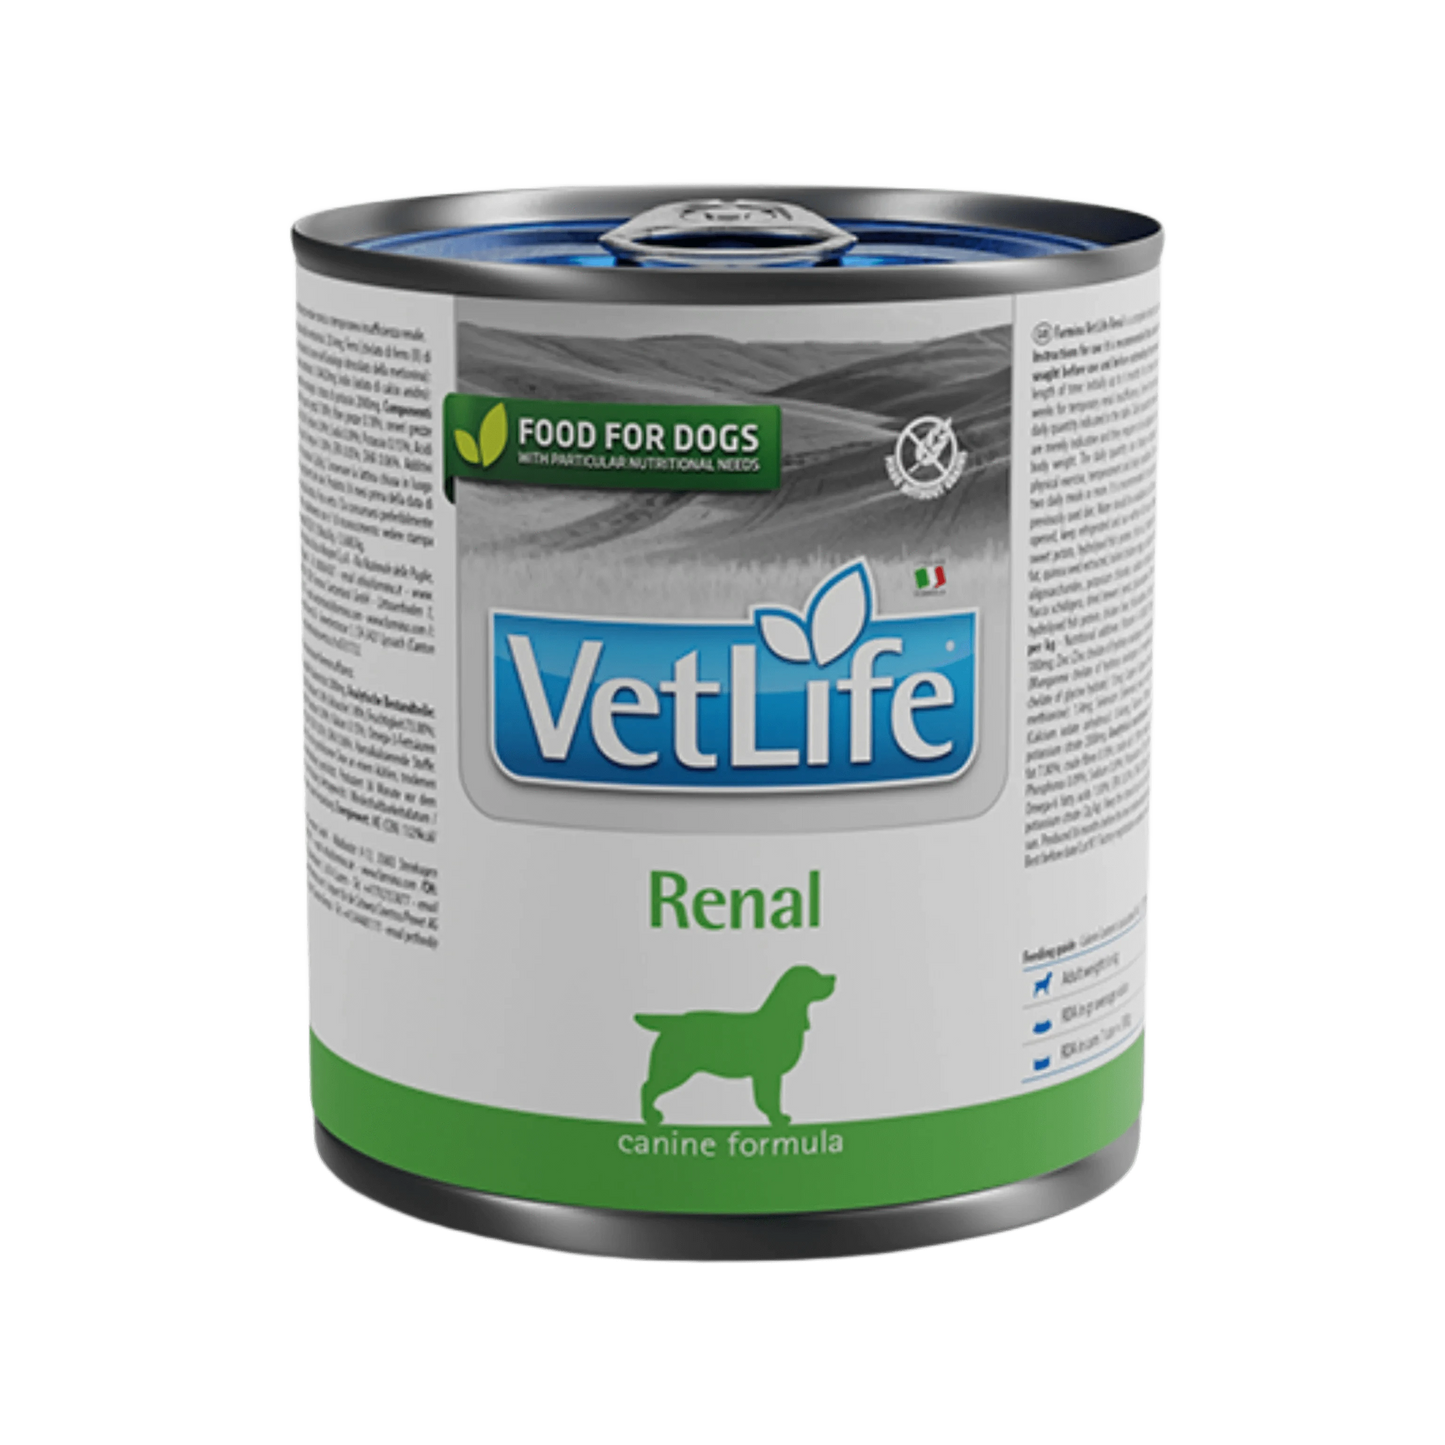 VETLIFE RENAL DOG CAN FOOD - Animeal